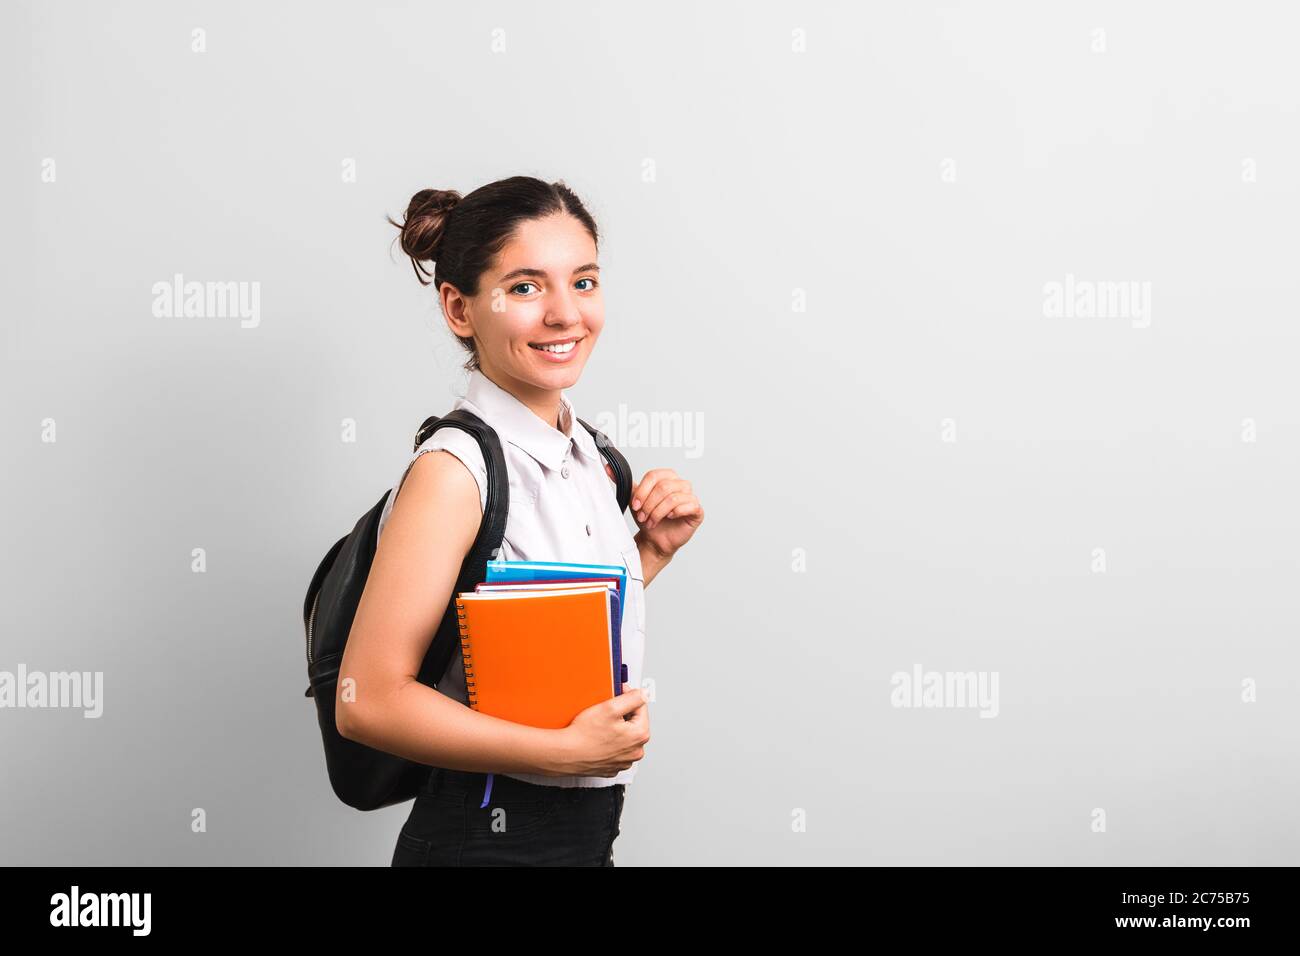 Attraktive Studentin mit Grübchen in Wangen lächelnd hält Notizbücher in einer Hand und Rucksack auf Schultern mit niedlichen Gesichtsausdruck Stockfoto